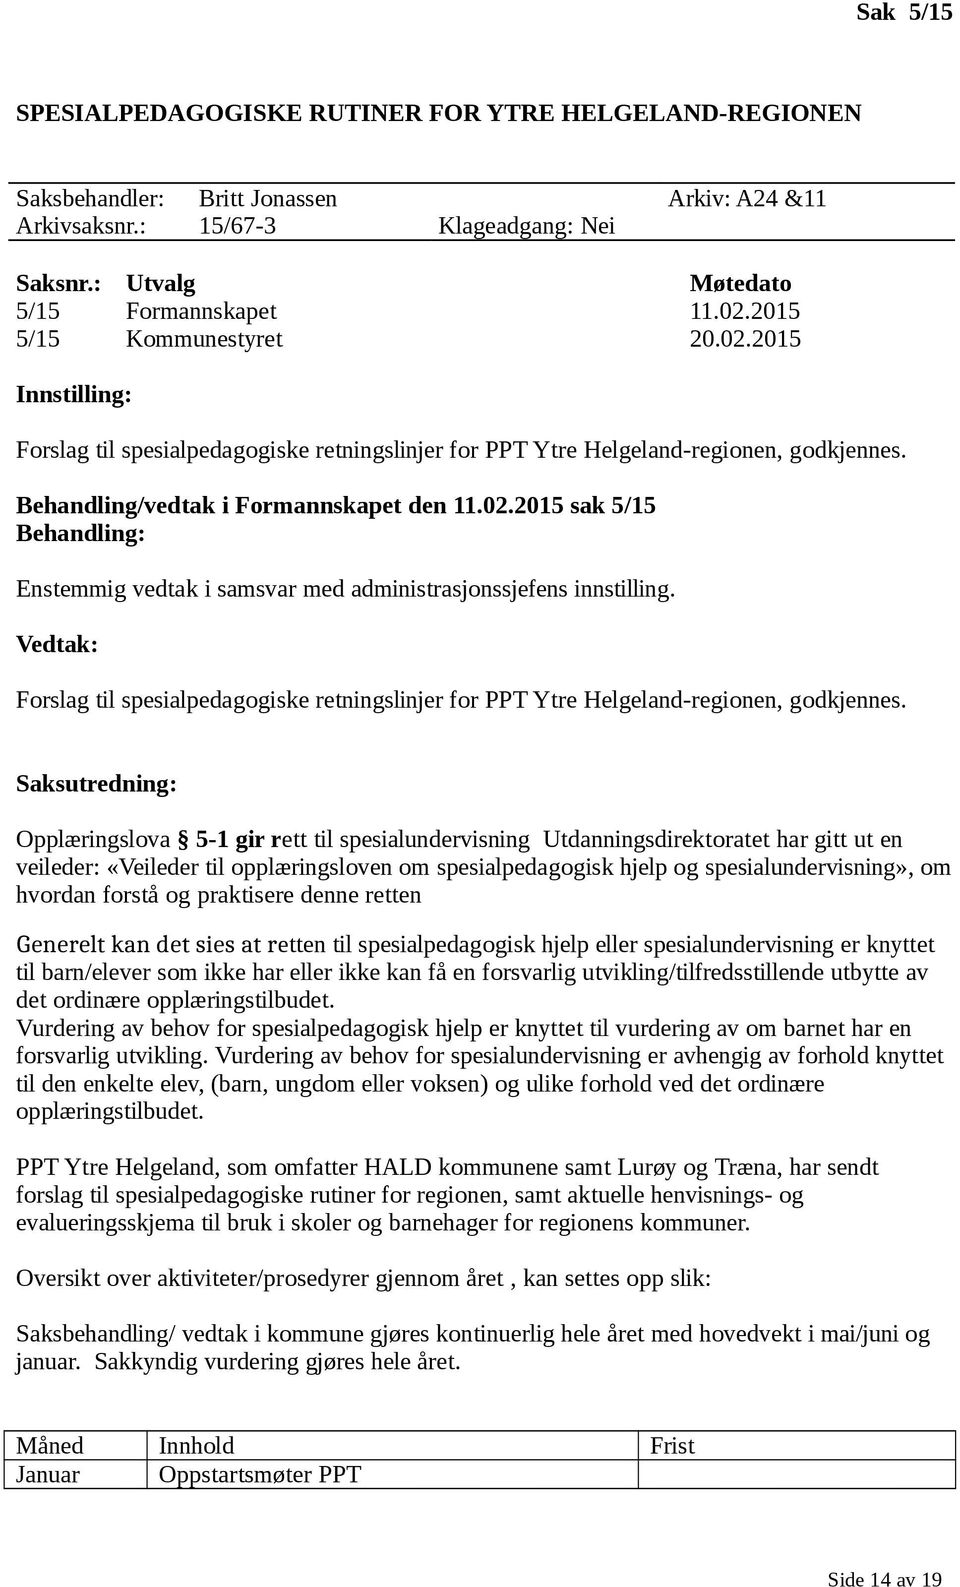 Vedtak: Forslag til spesialpedagogiske retningslinjer for PPT Ytre Helgeland-regionen, godkjennes.